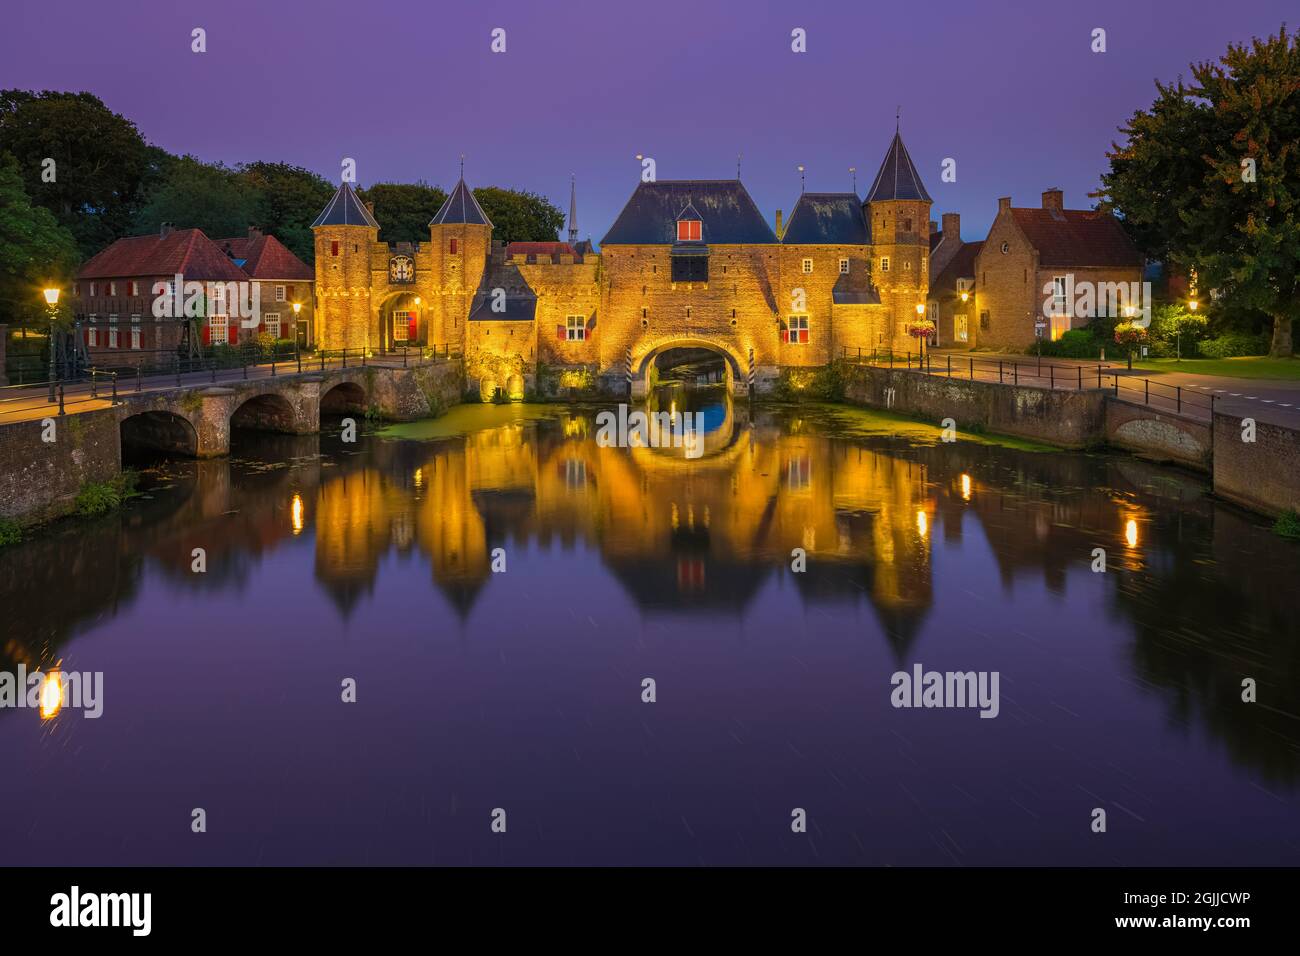 Das Koppelpoort ist ein mittelalterliches Tor in der niederländischen Stadt Amersfoort, Provinz Utrecht. Es wurde um 1425 fertiggestellt und kombiniert Land- und Wassertore, und Stockfoto